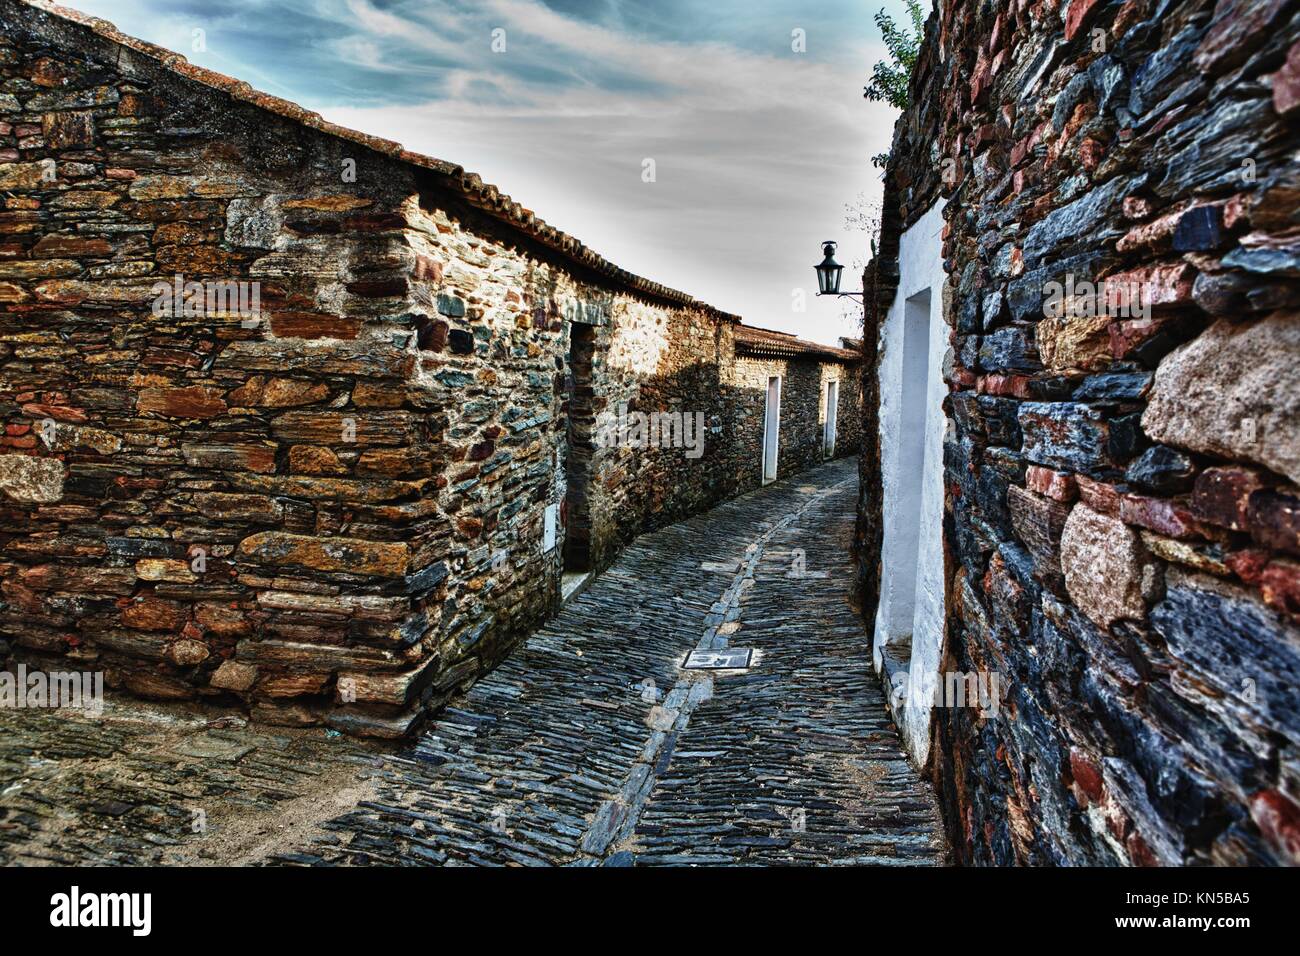 Magnífica villa de Monsaraz, tradicional calle con pequeñas casas blancas y tejas rojas una vista típica del sur del país. Foto de stock